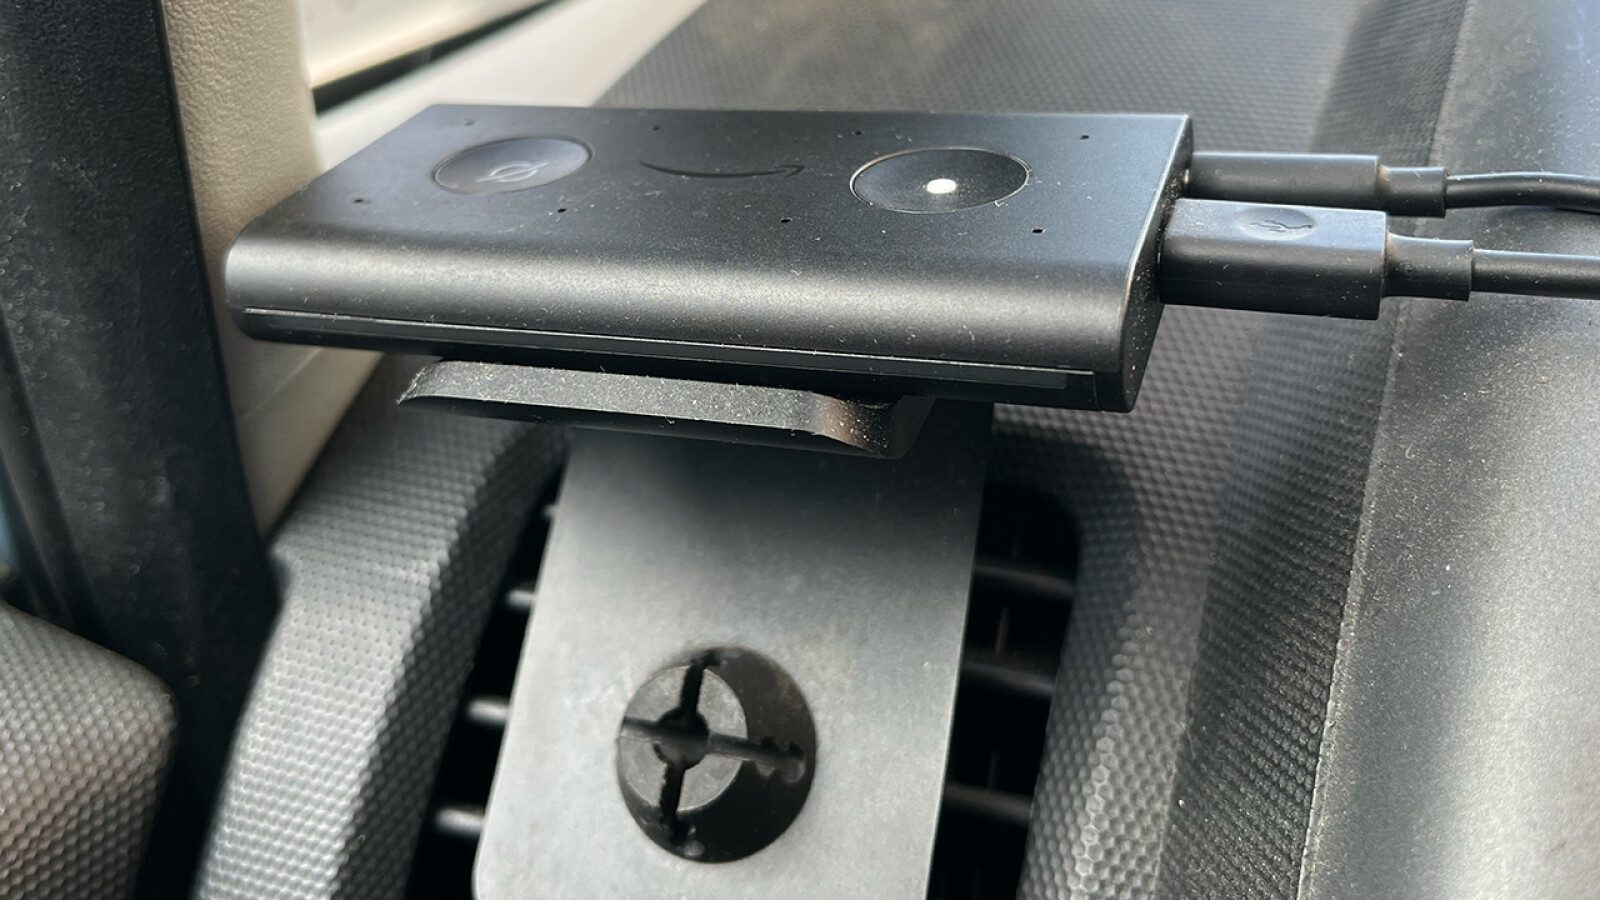 Echo Auto als Bluetooth-Empfänger für die Stereoanlage nutzen: So geht's